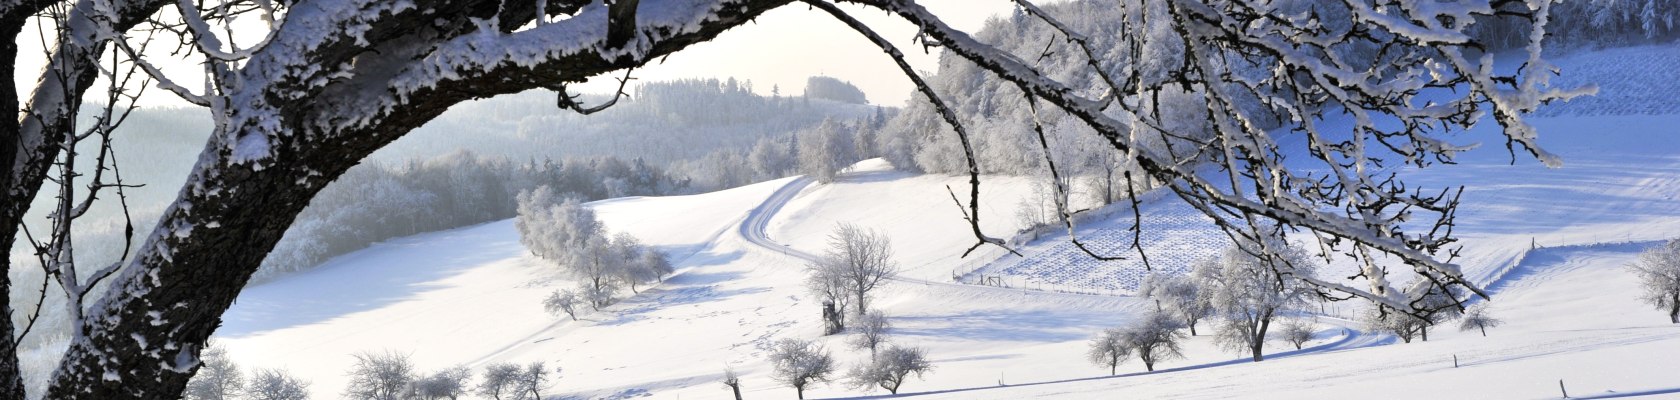 Jauerling im Winter, © Naturparke Niederösterreich/POV